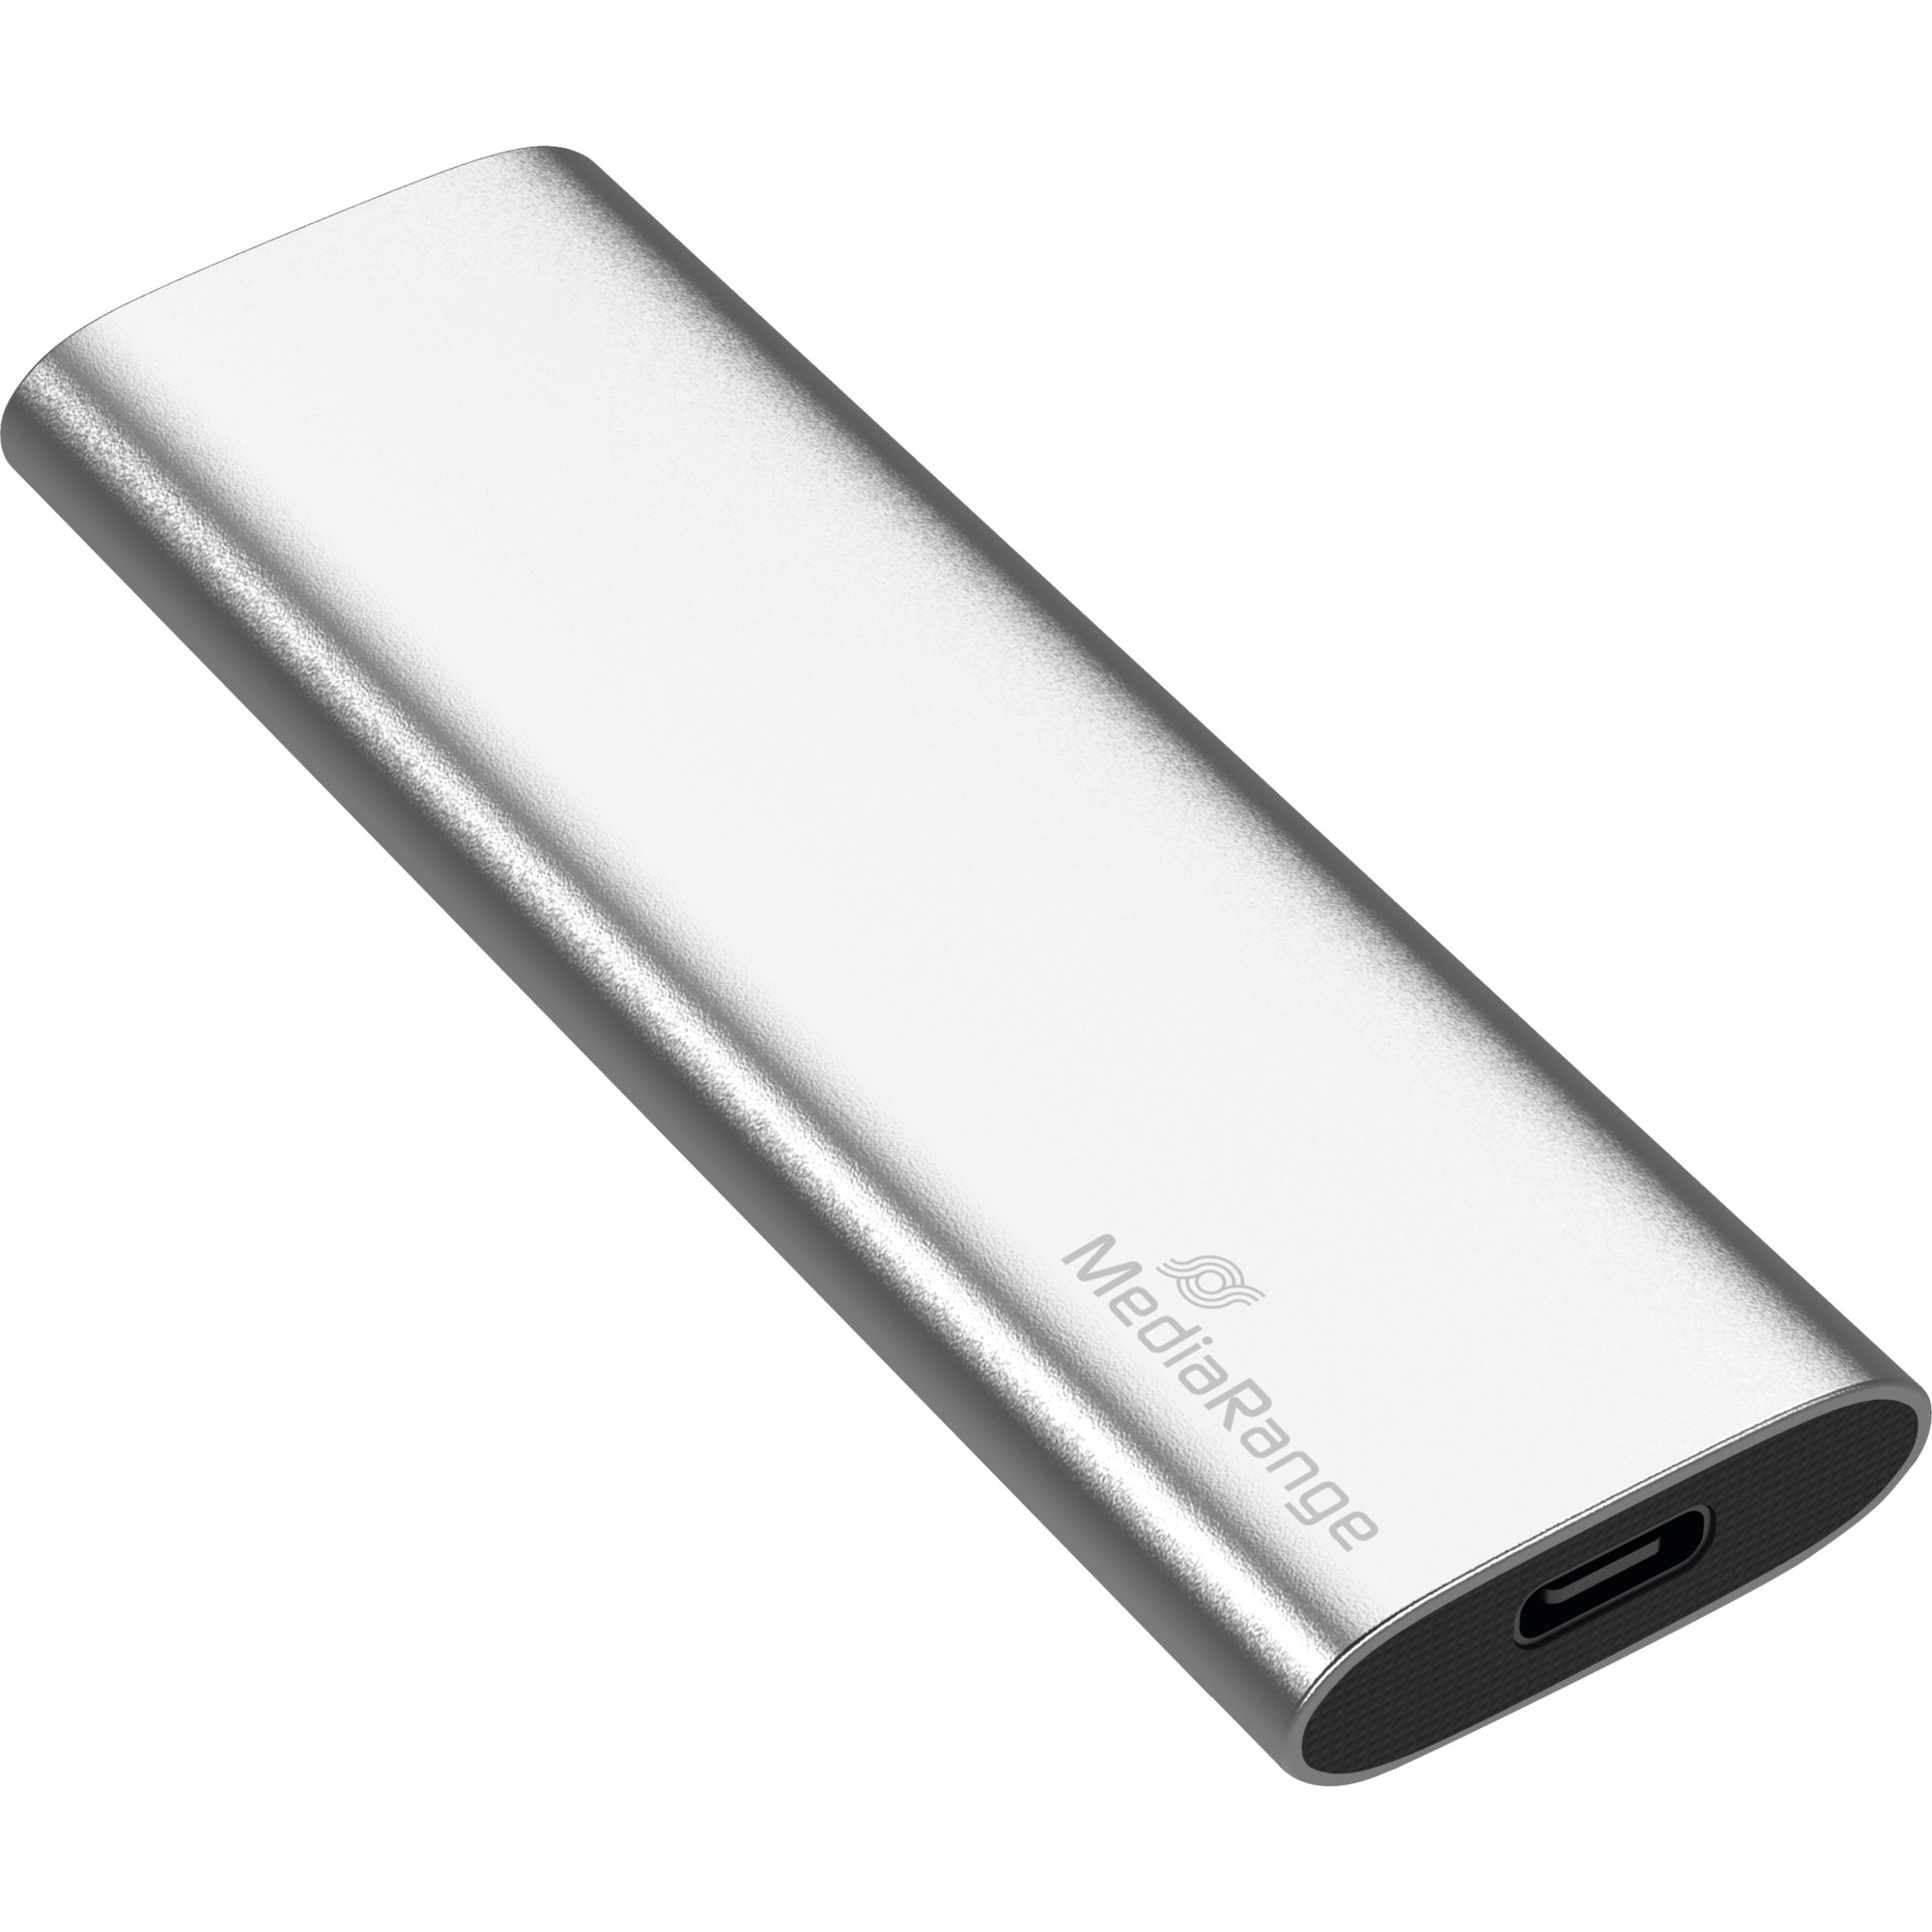 Image of Alternate - 120 GB, Externe SSD online einkaufen bei Alternate